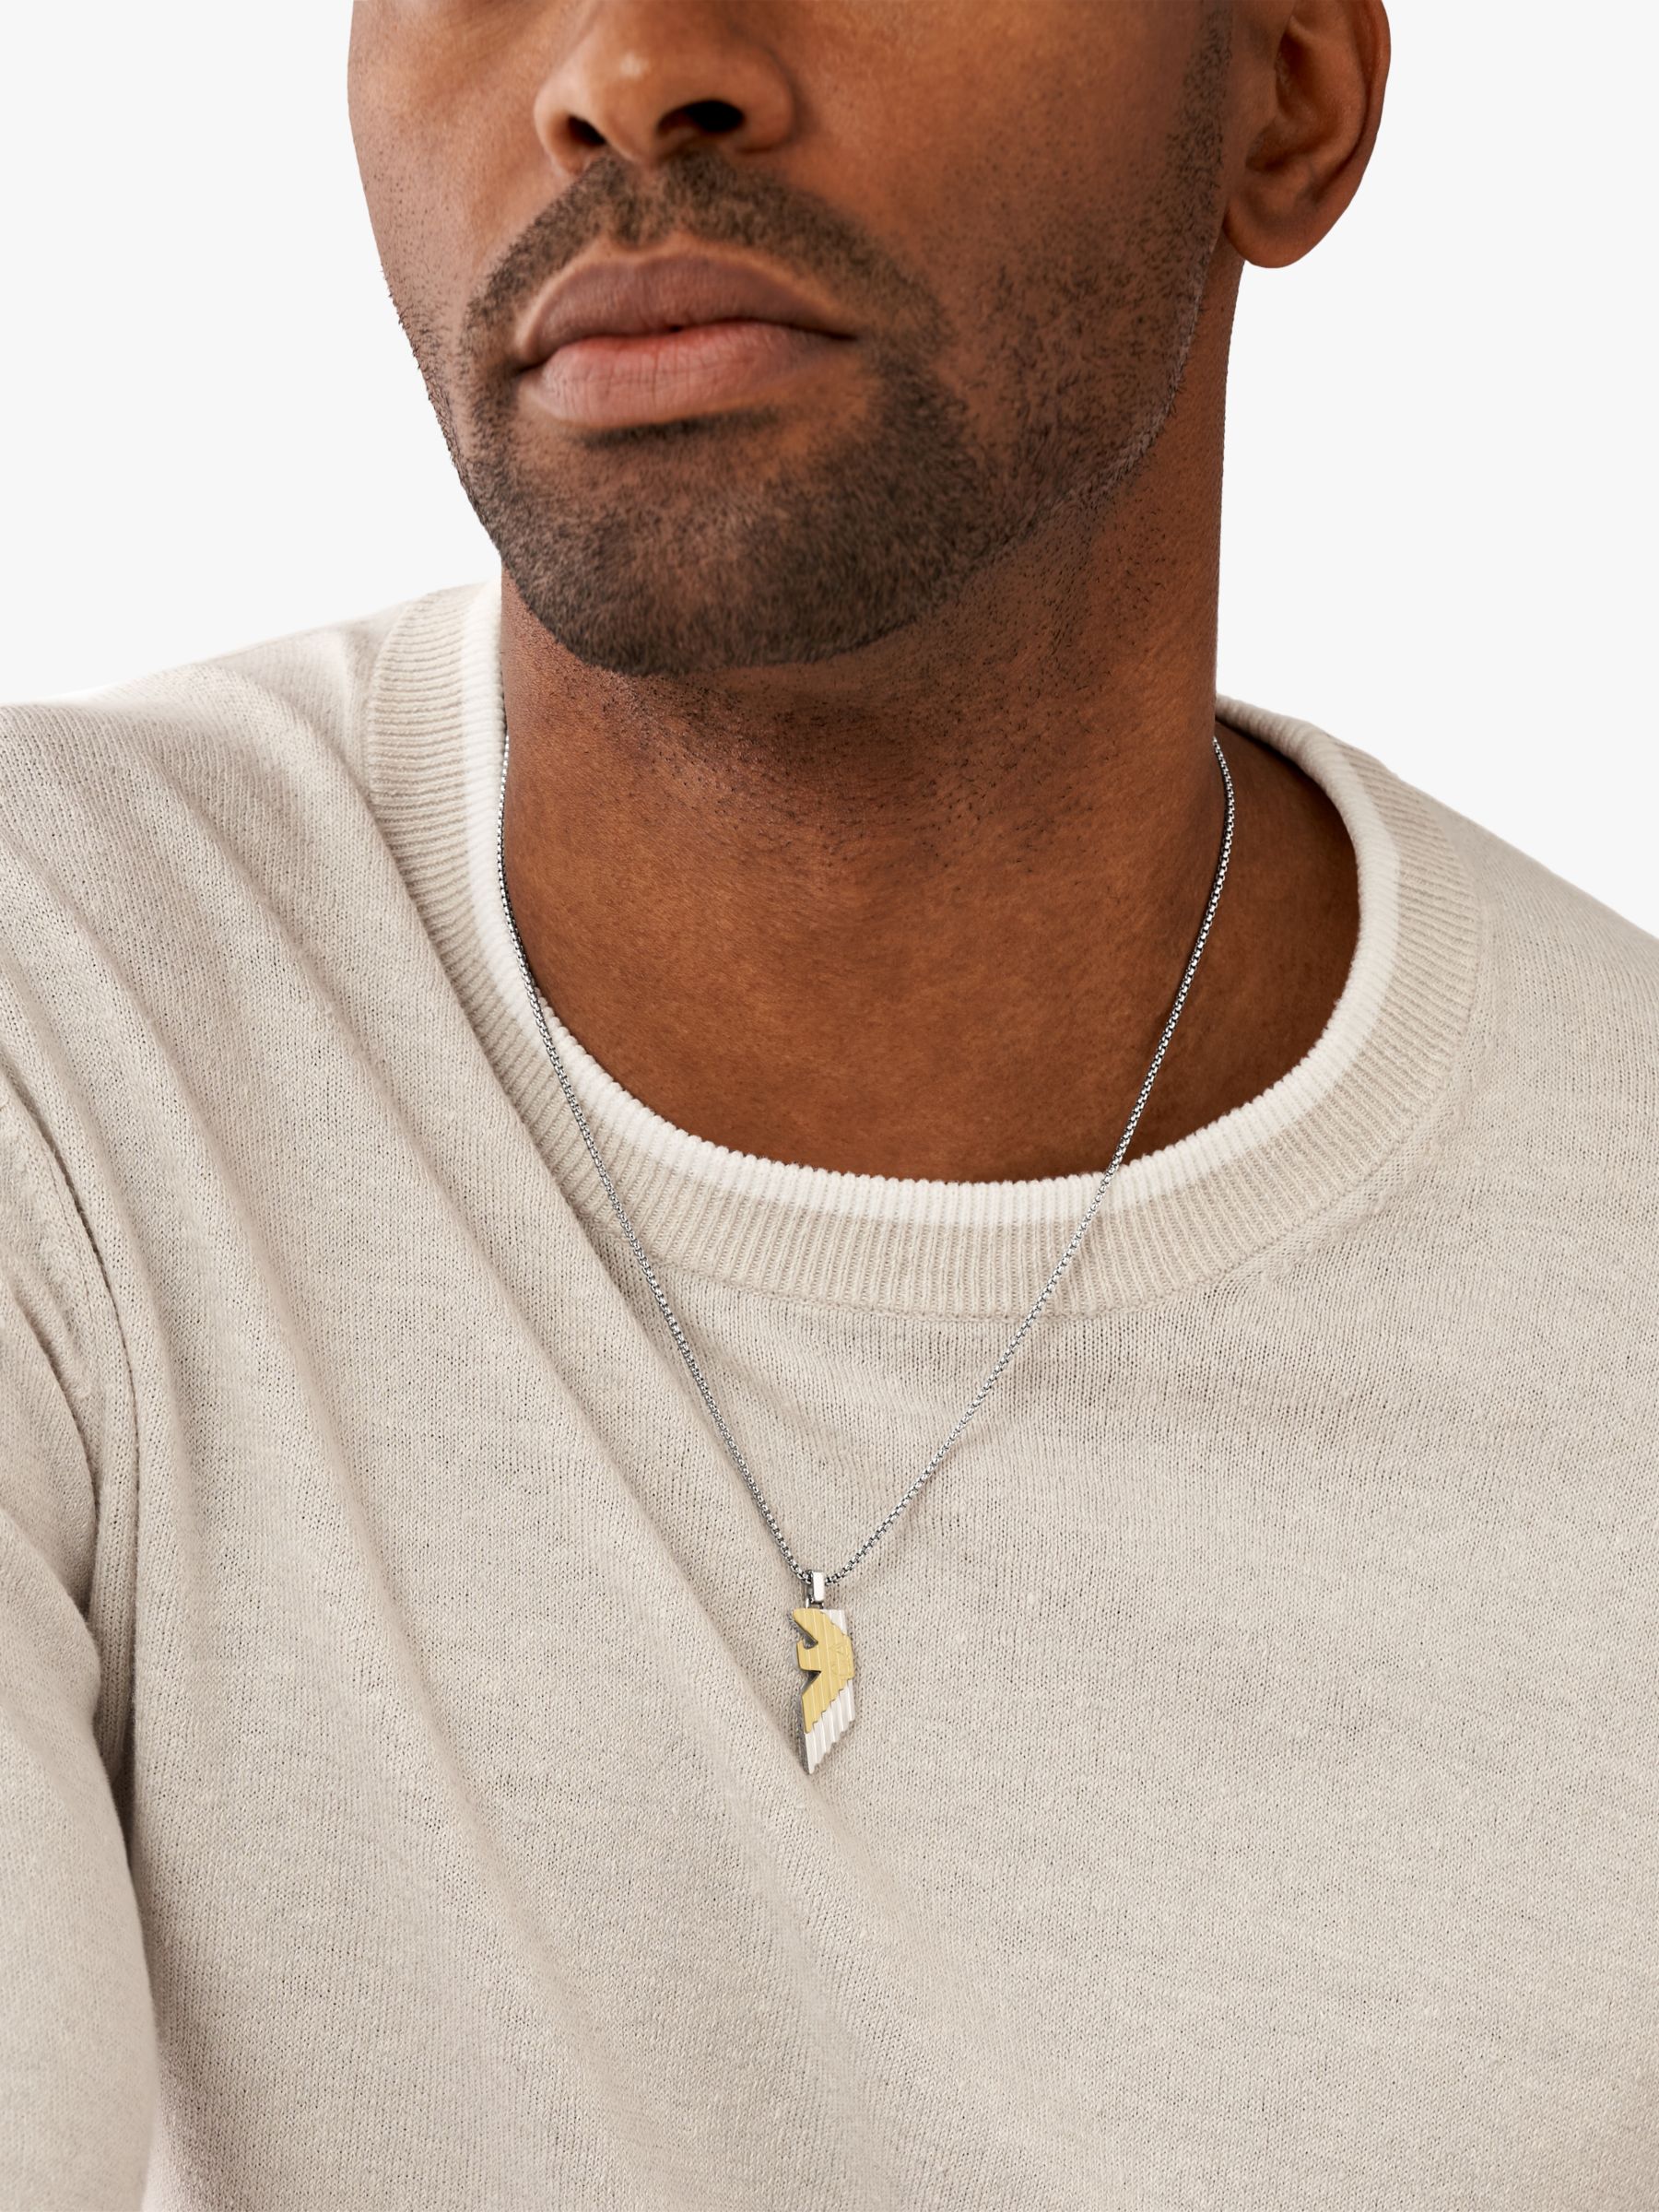 Emporio Armani Men's Eagle Logo Pendant Necklace, Silver/Gold